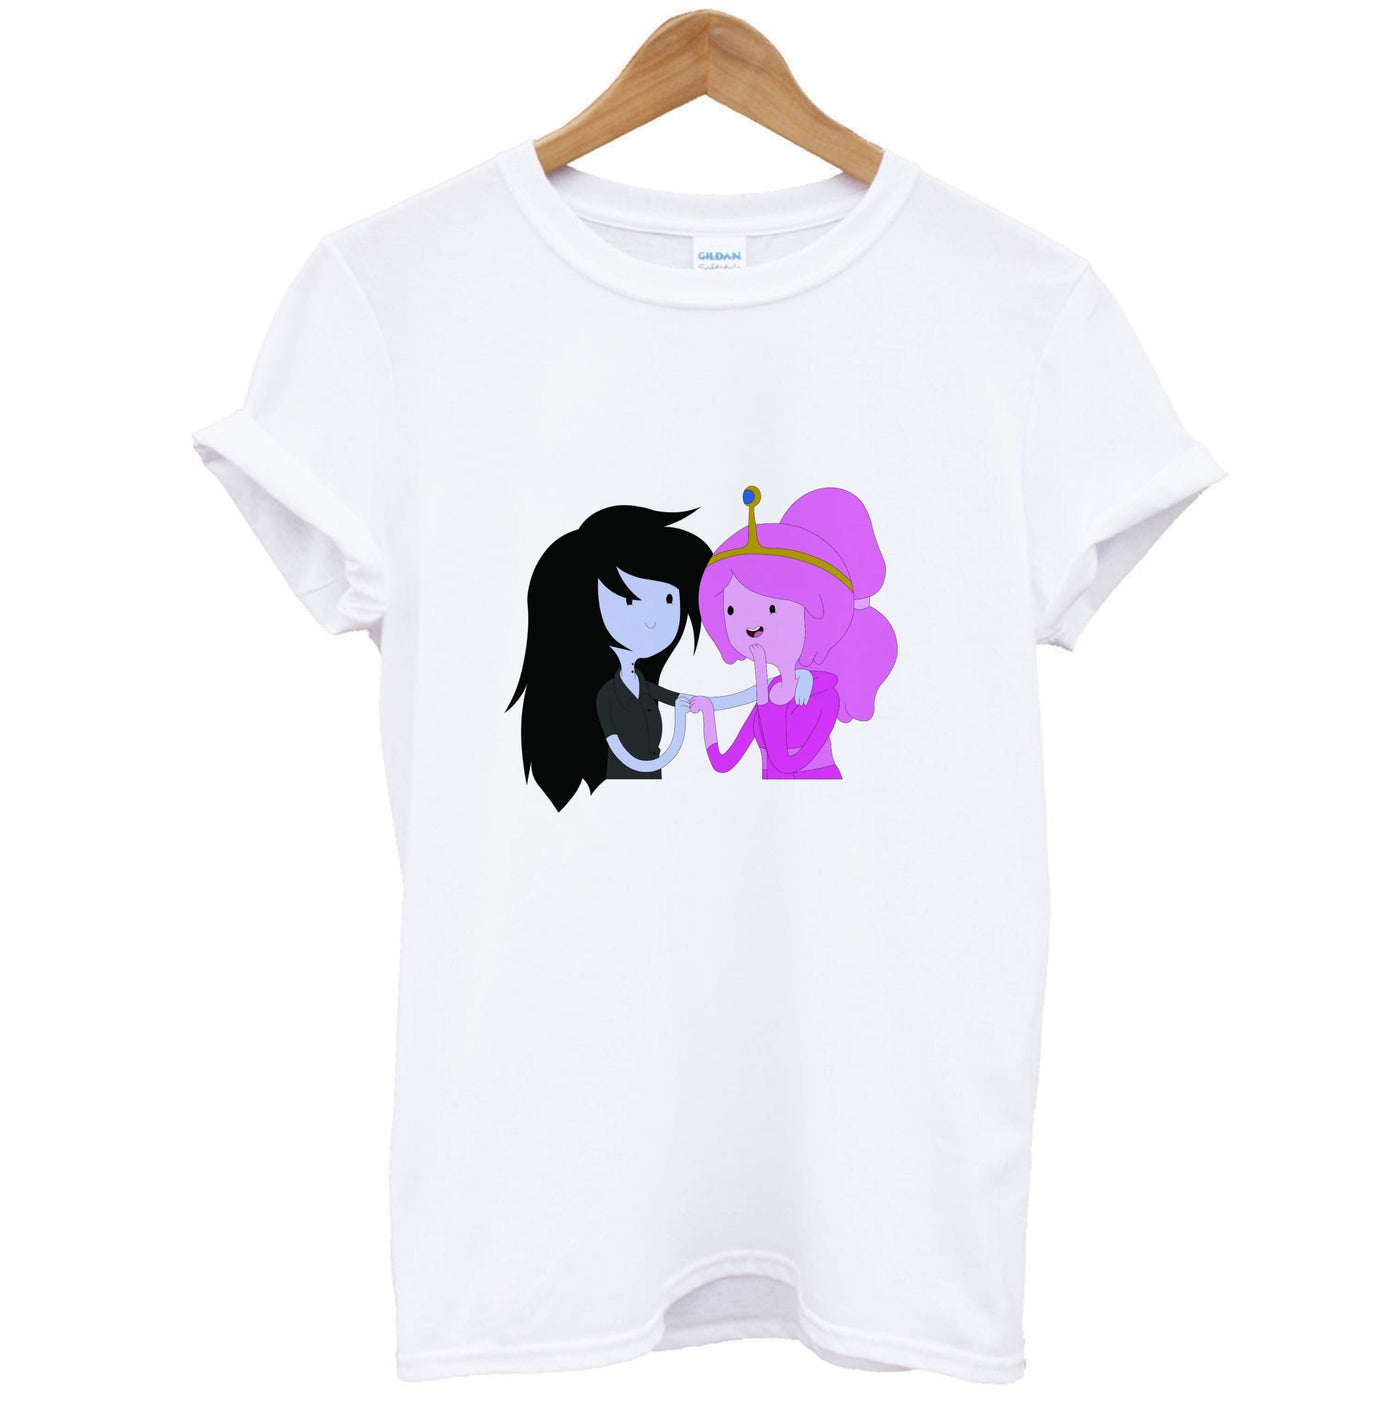 Marceline And Bubblegum - Adventure Time T-Shirt